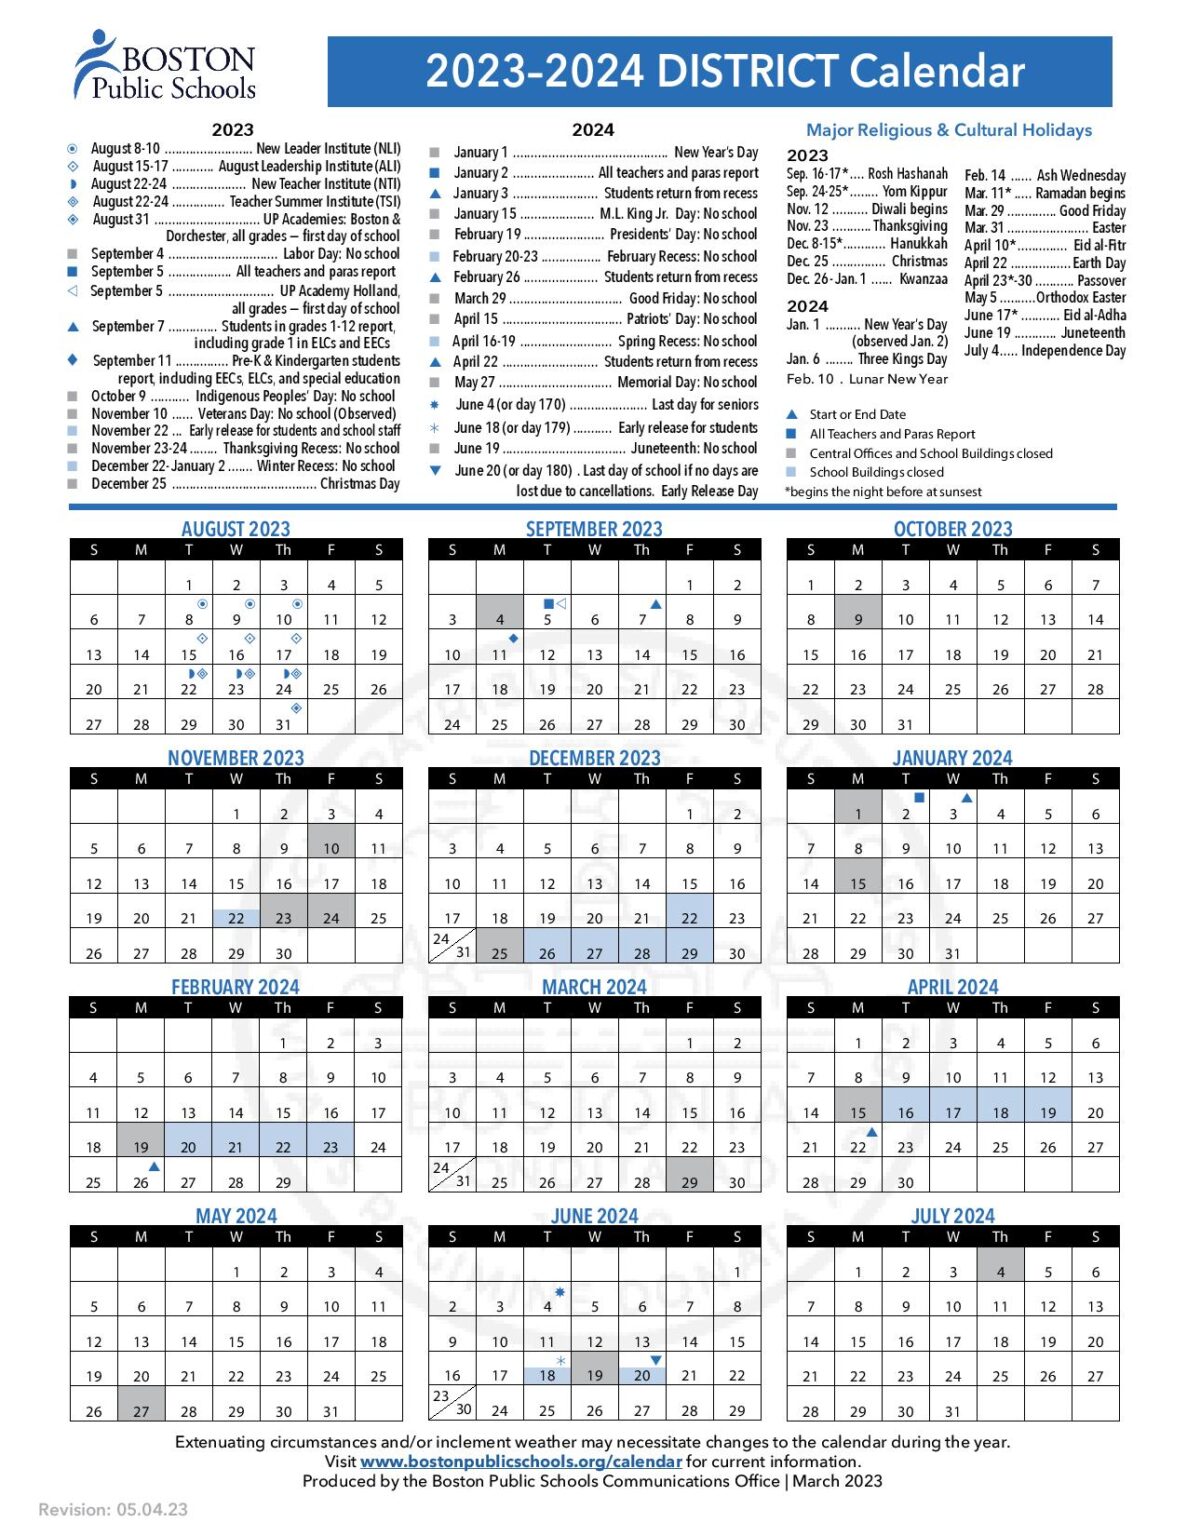 Boston Public Schools Calendar Holidays 2024 PDF